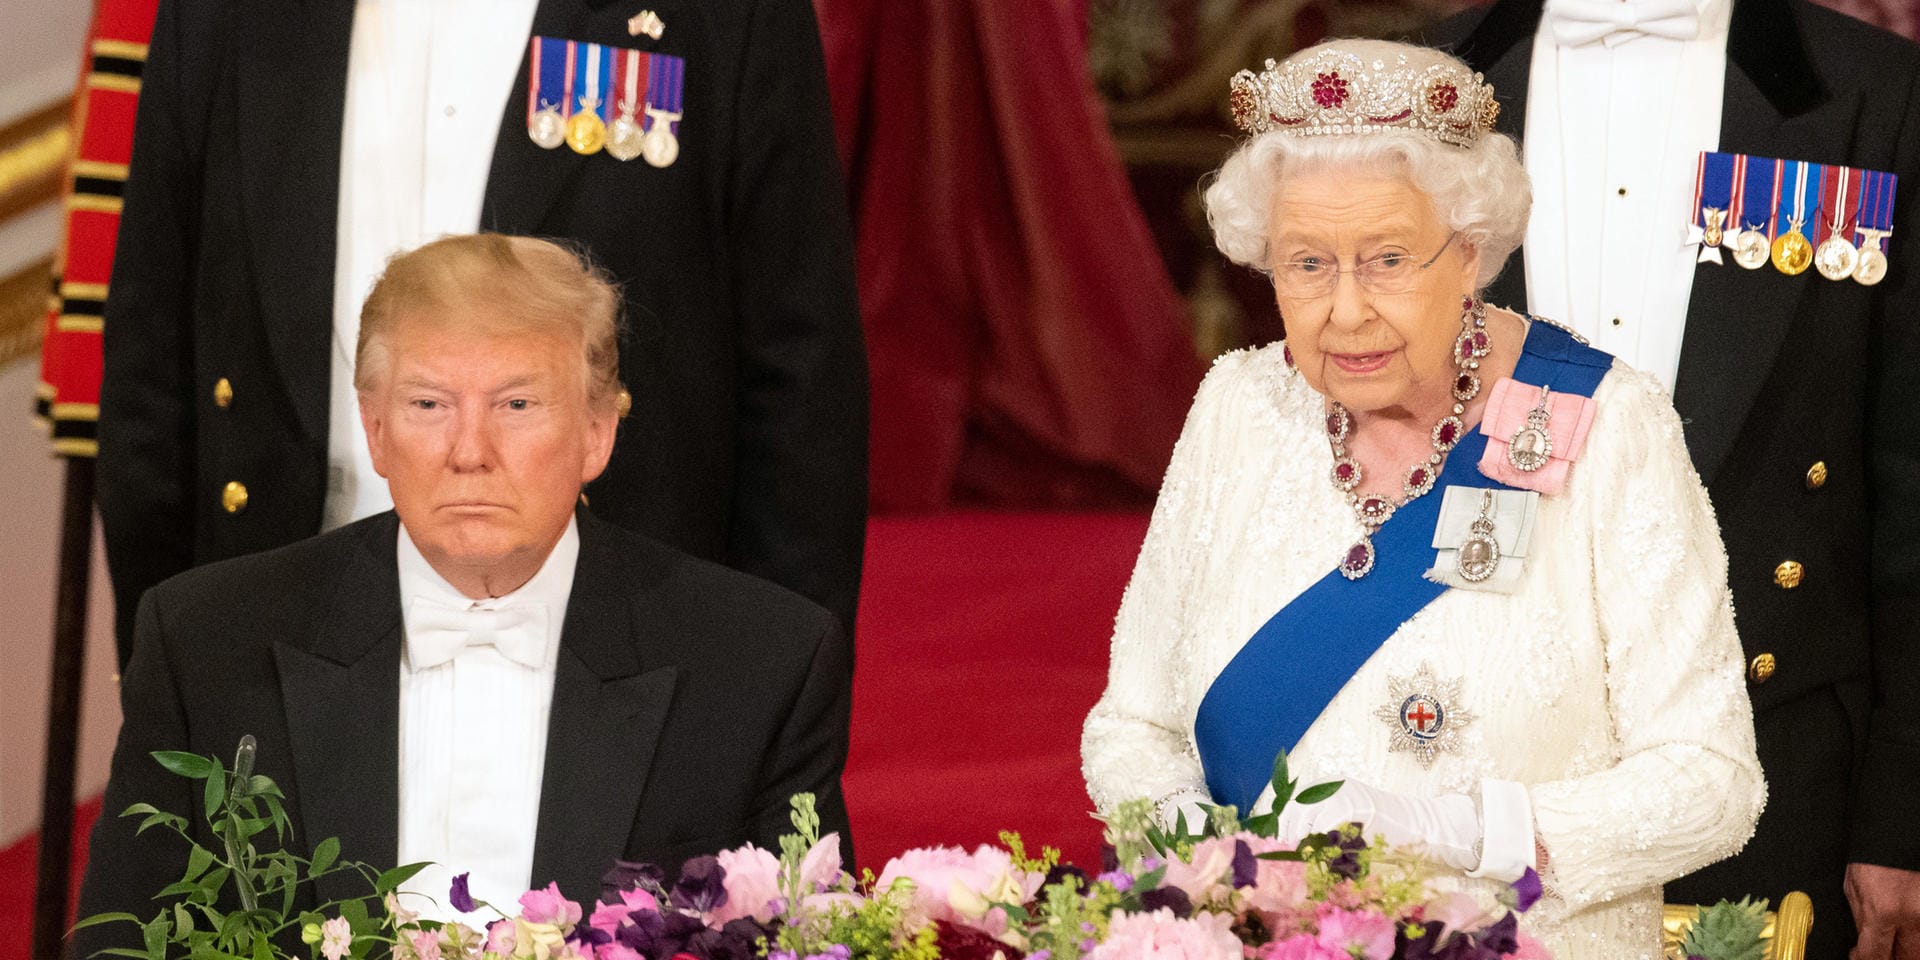 Die Queen lobte in ihrer Ansprache die "enge und langjährige Freundschaft" zwischen den beiden Staaten, forderte Trump jedoch ungewöhnlich deutlich auf, internationale Institutionen zu erhalten.